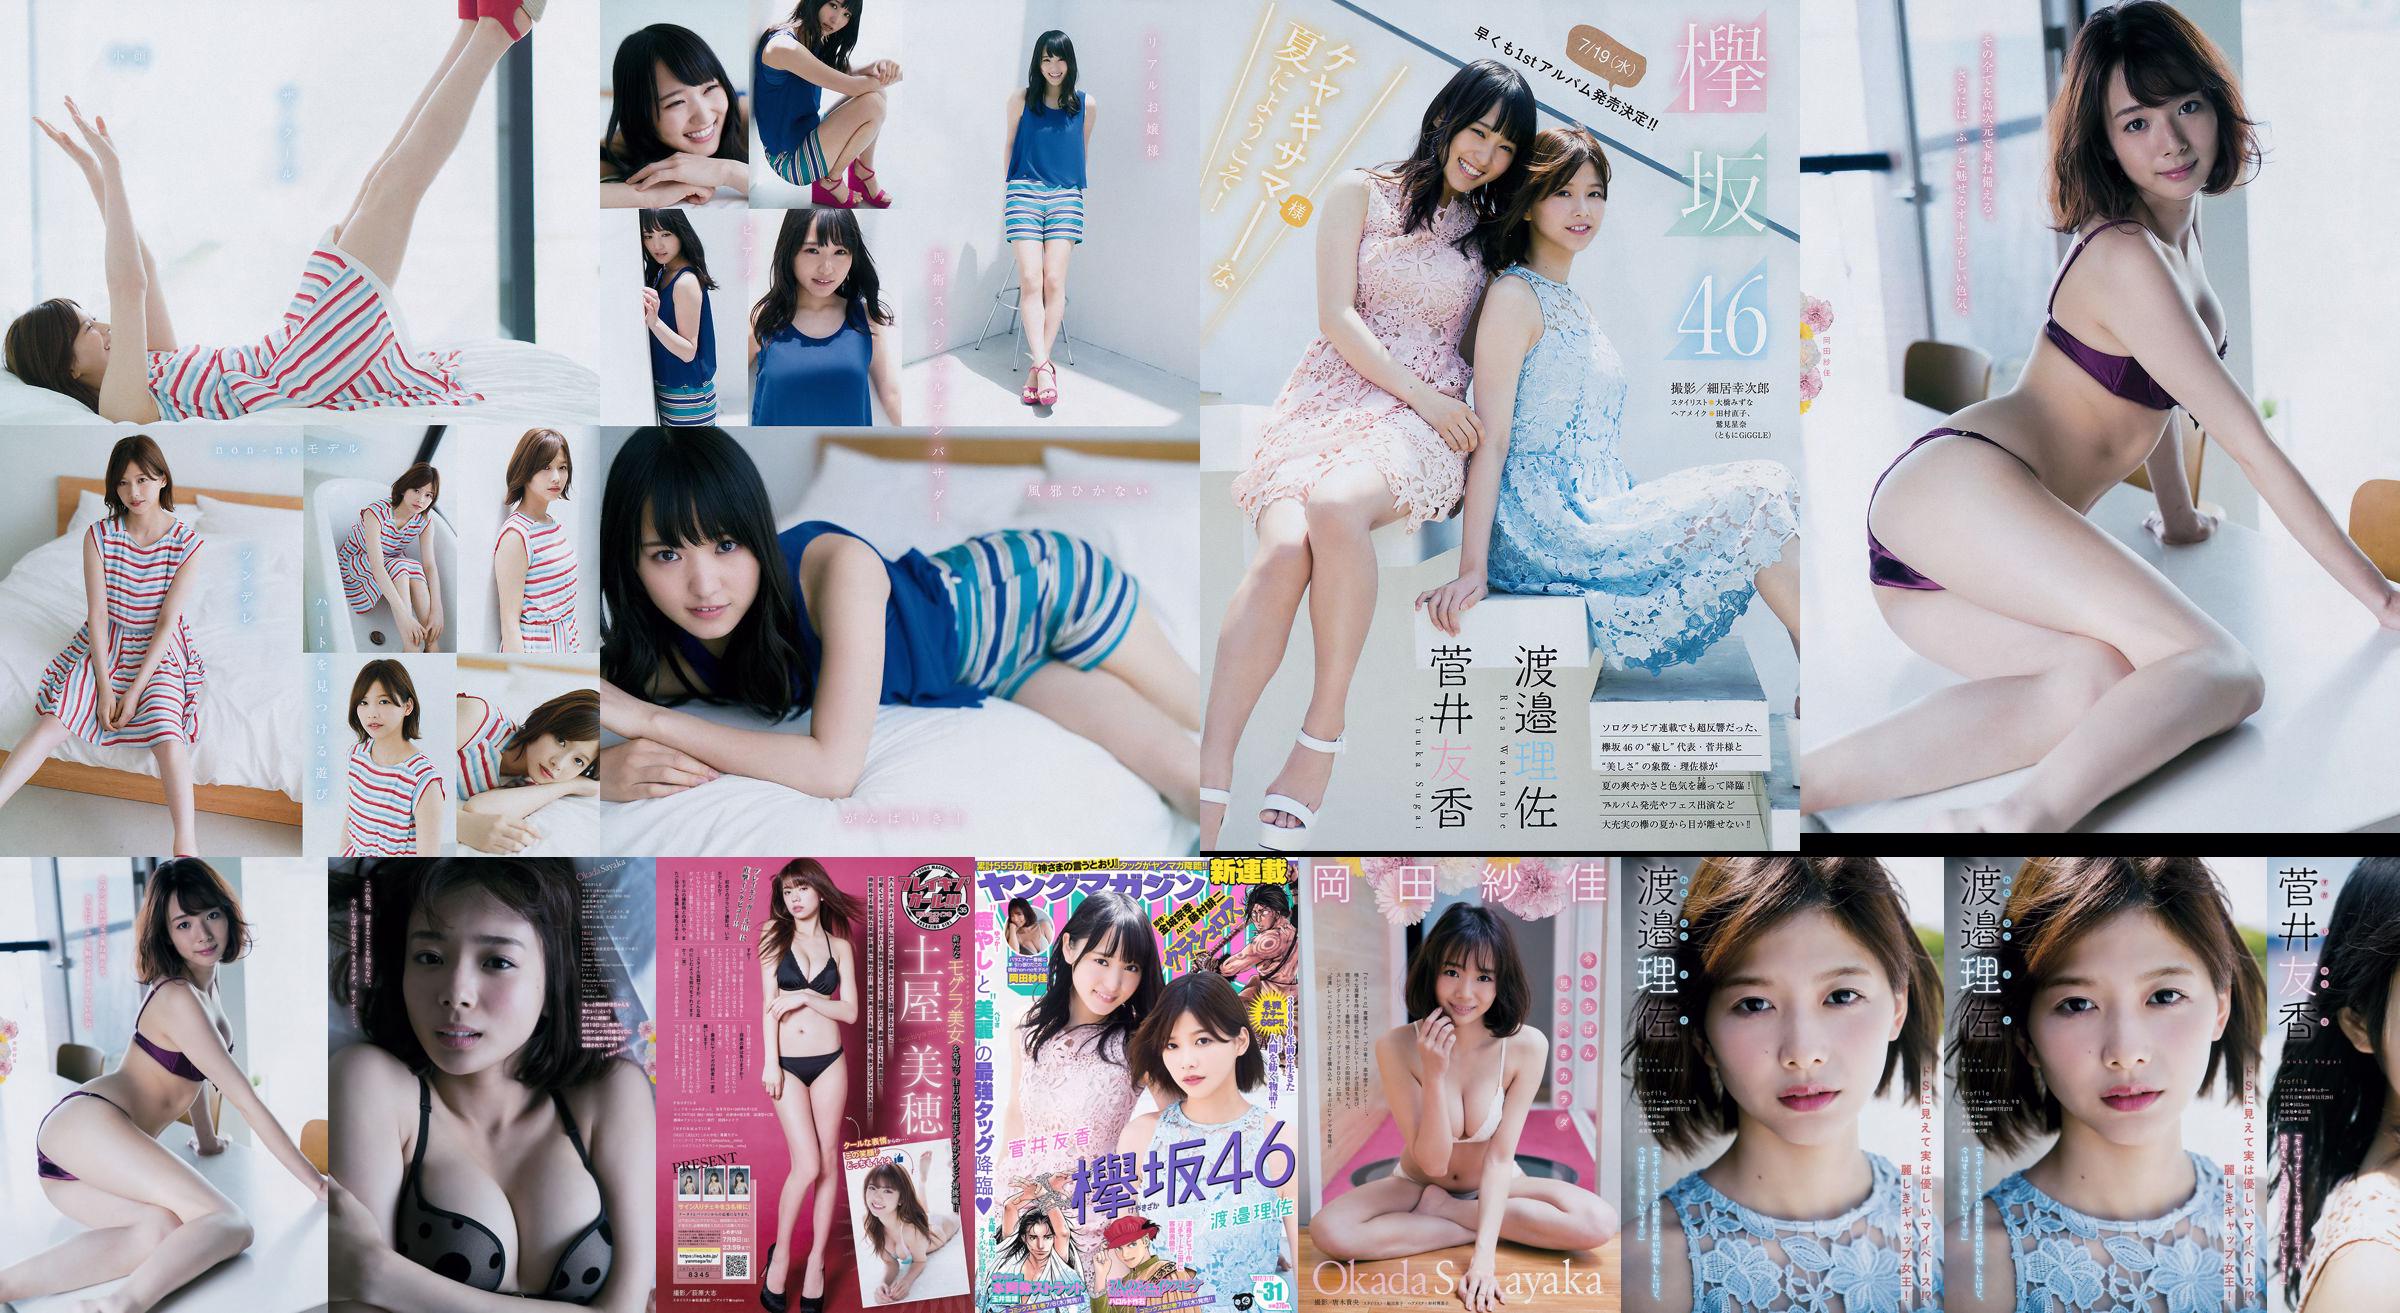 [Young Magazine] Watanabe Risa, Sugai Yuka, Okada Saika 2017 No.31 Photo Magazine No.3a0ce7 Pagina 1